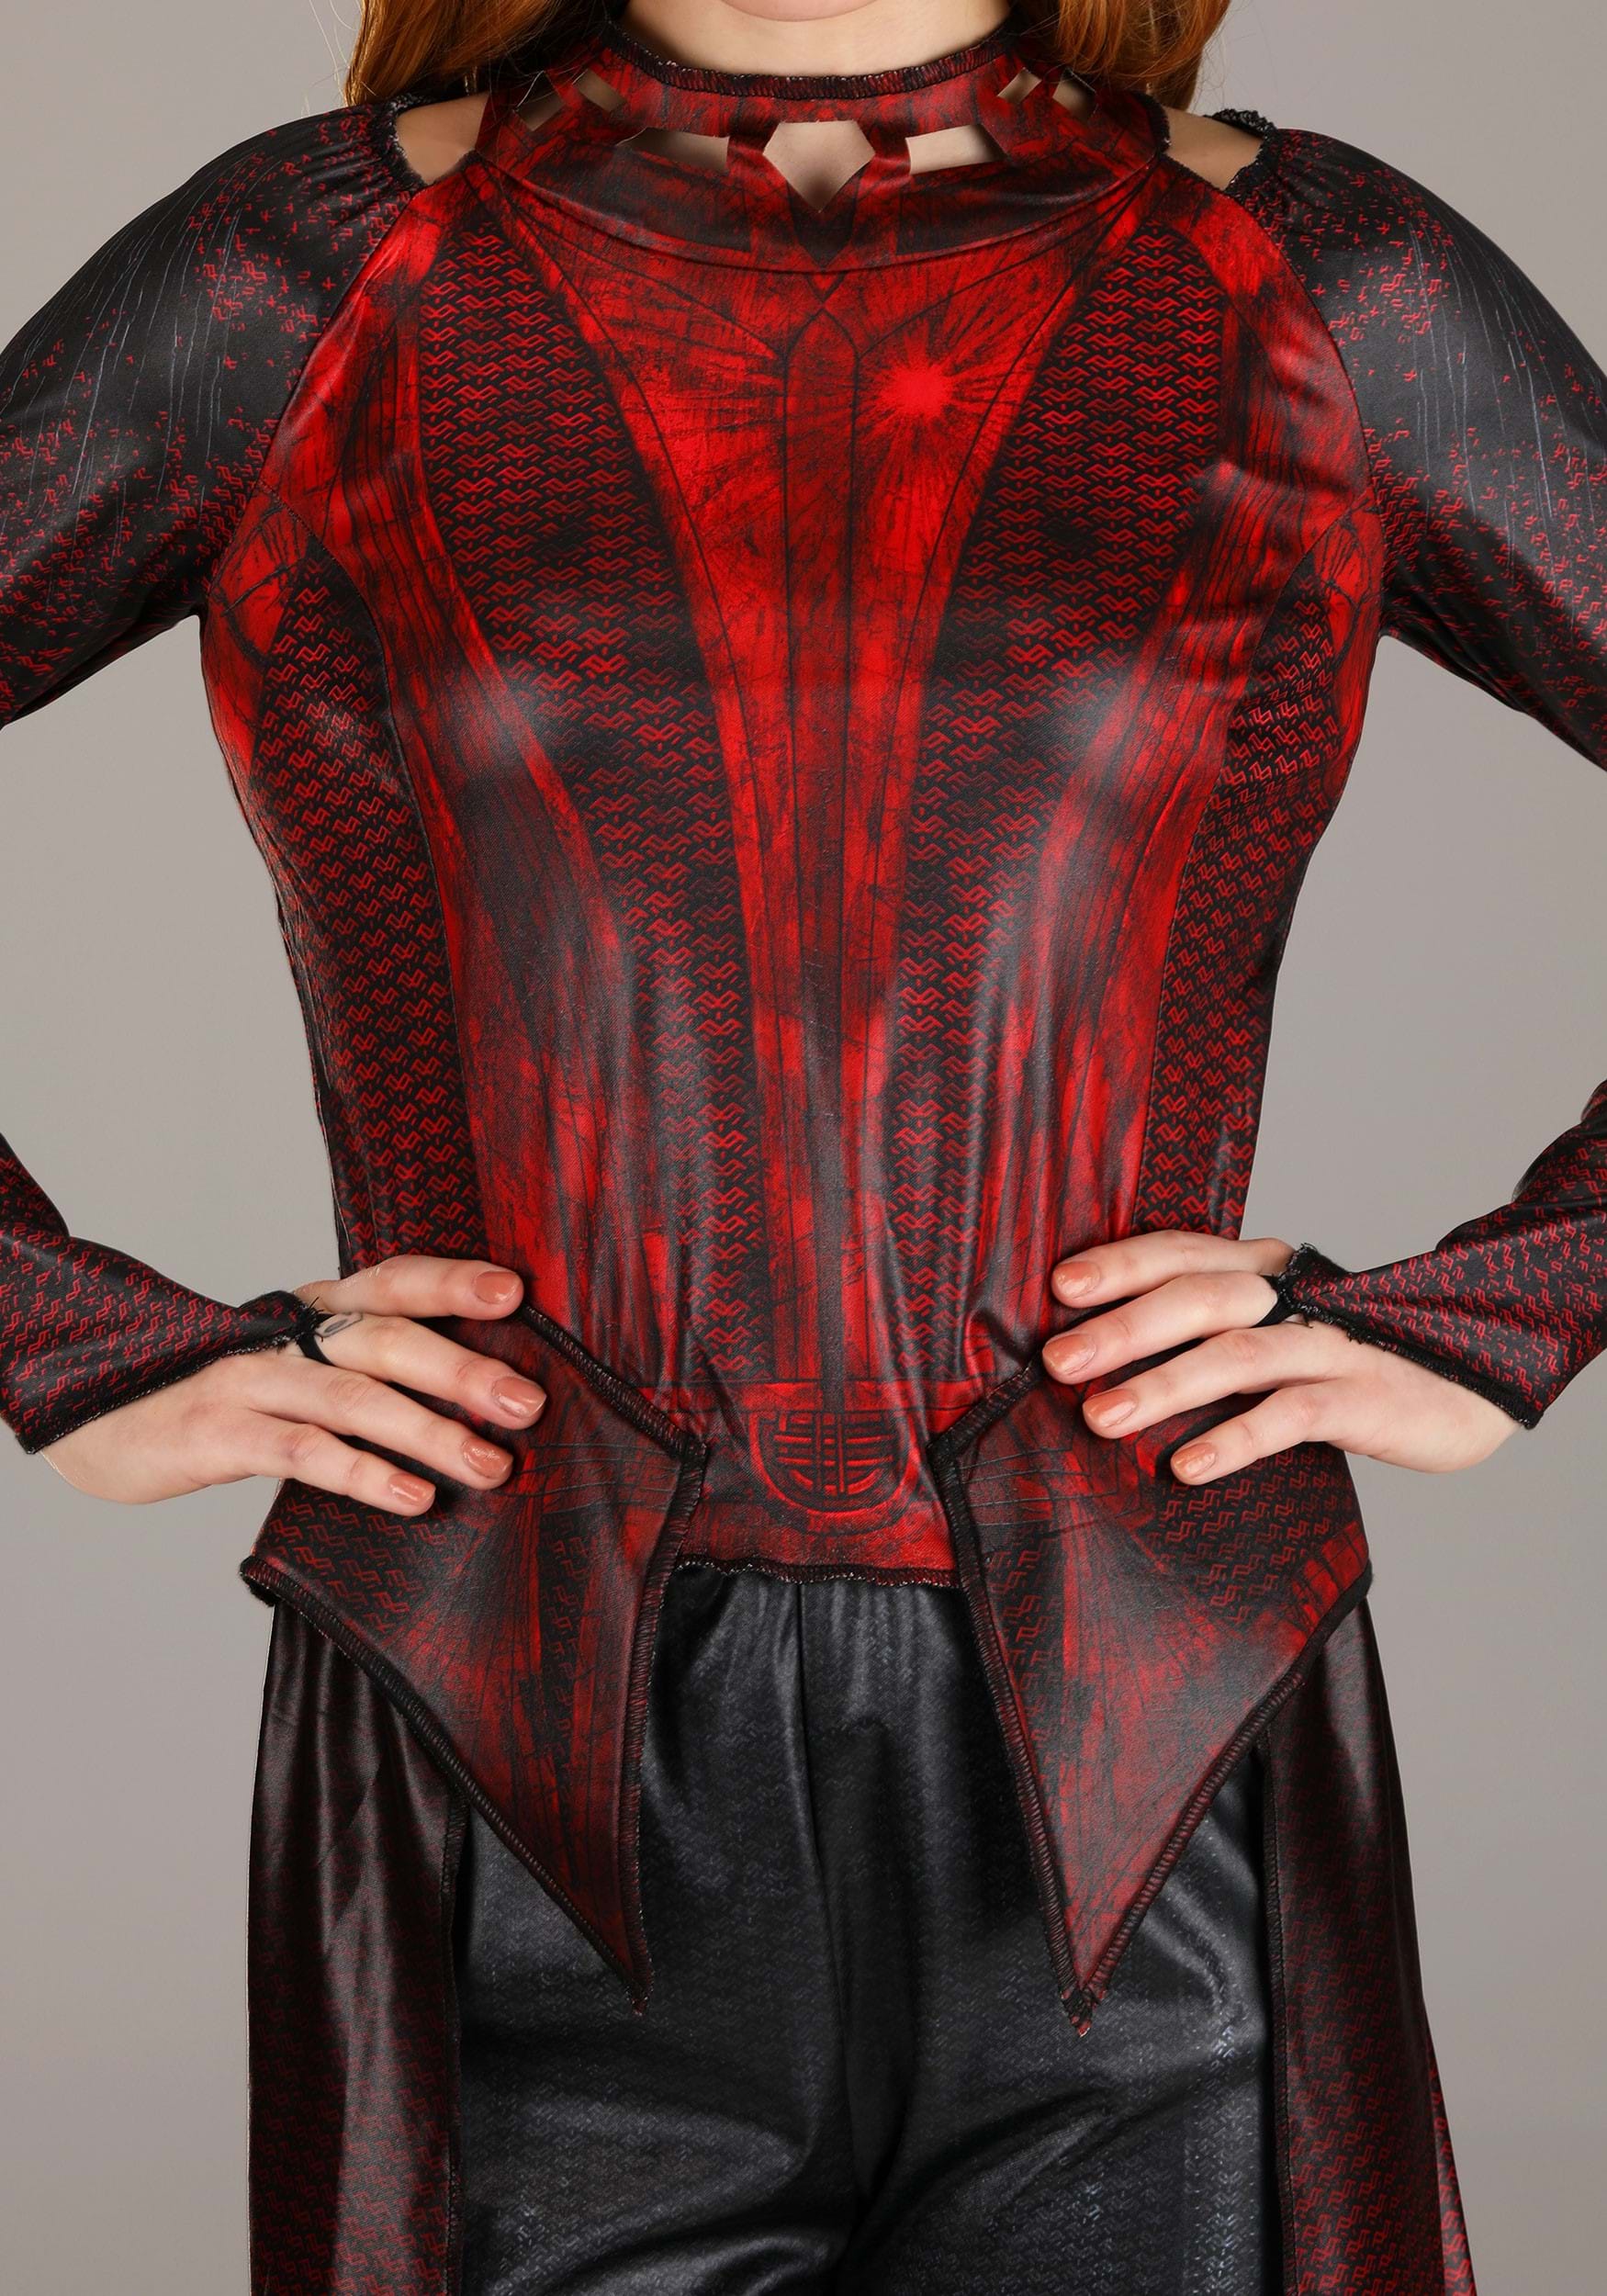 Scarlet Witch Hero Fancy Dress Costume For Women